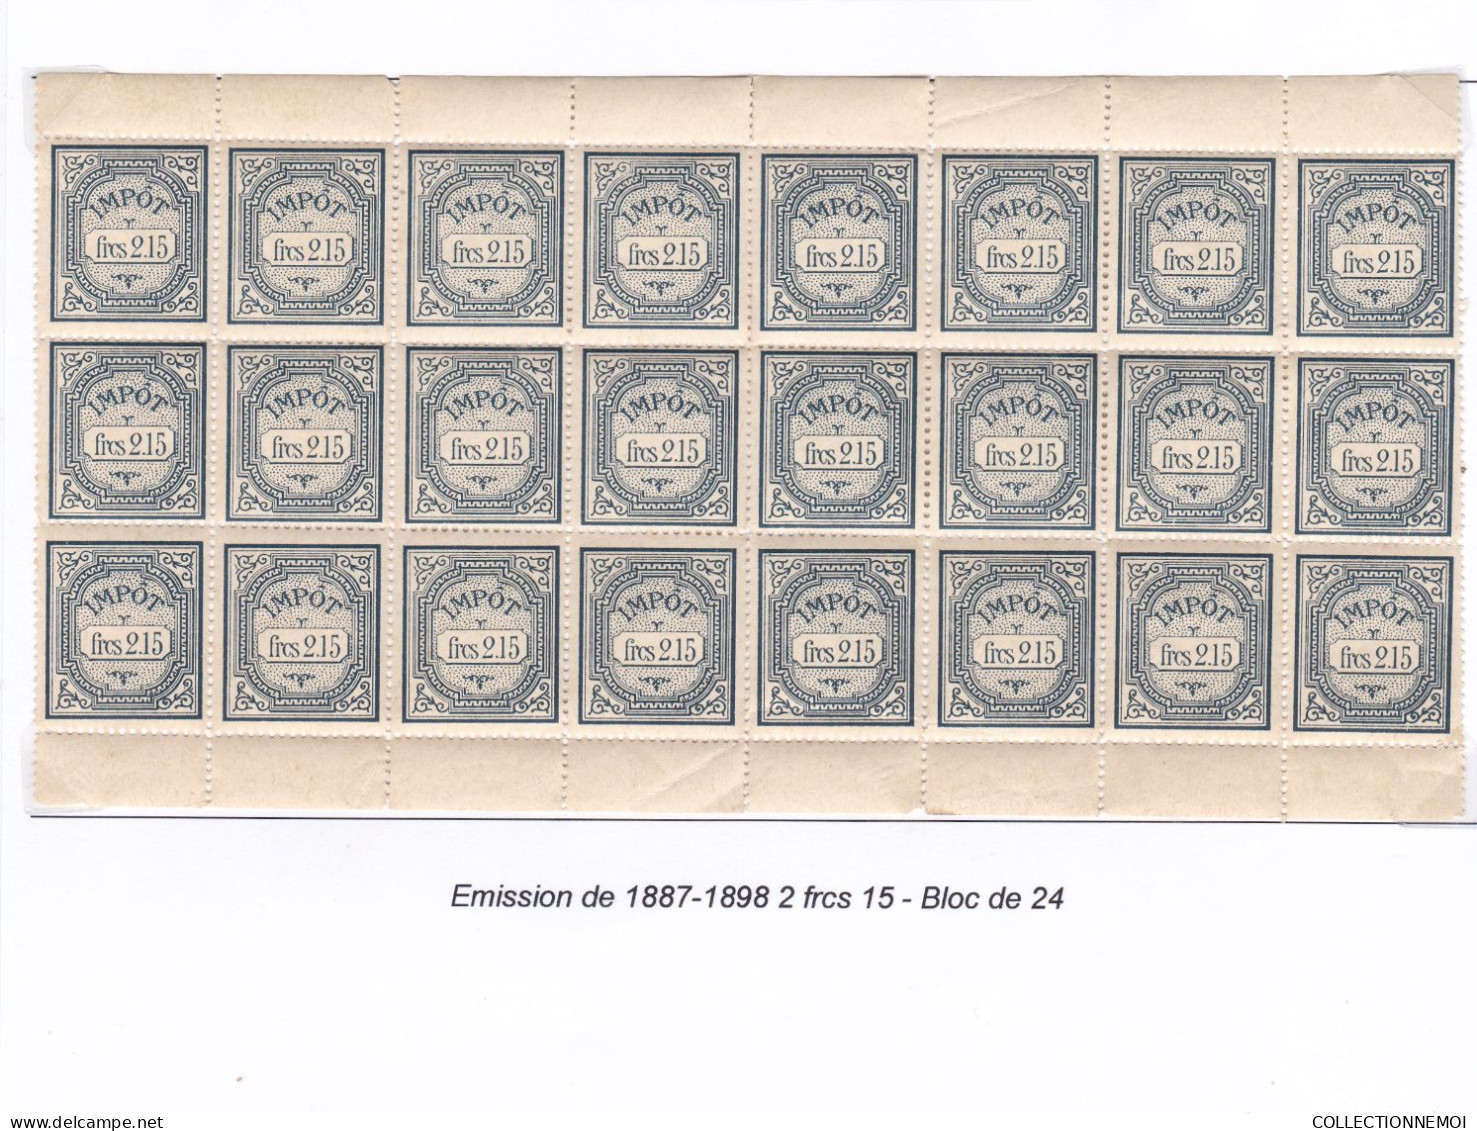 WAGONS-LITS   ,,, 24 Timbres ,,, Des Decoupage Dans Ce Bloc - Stamps